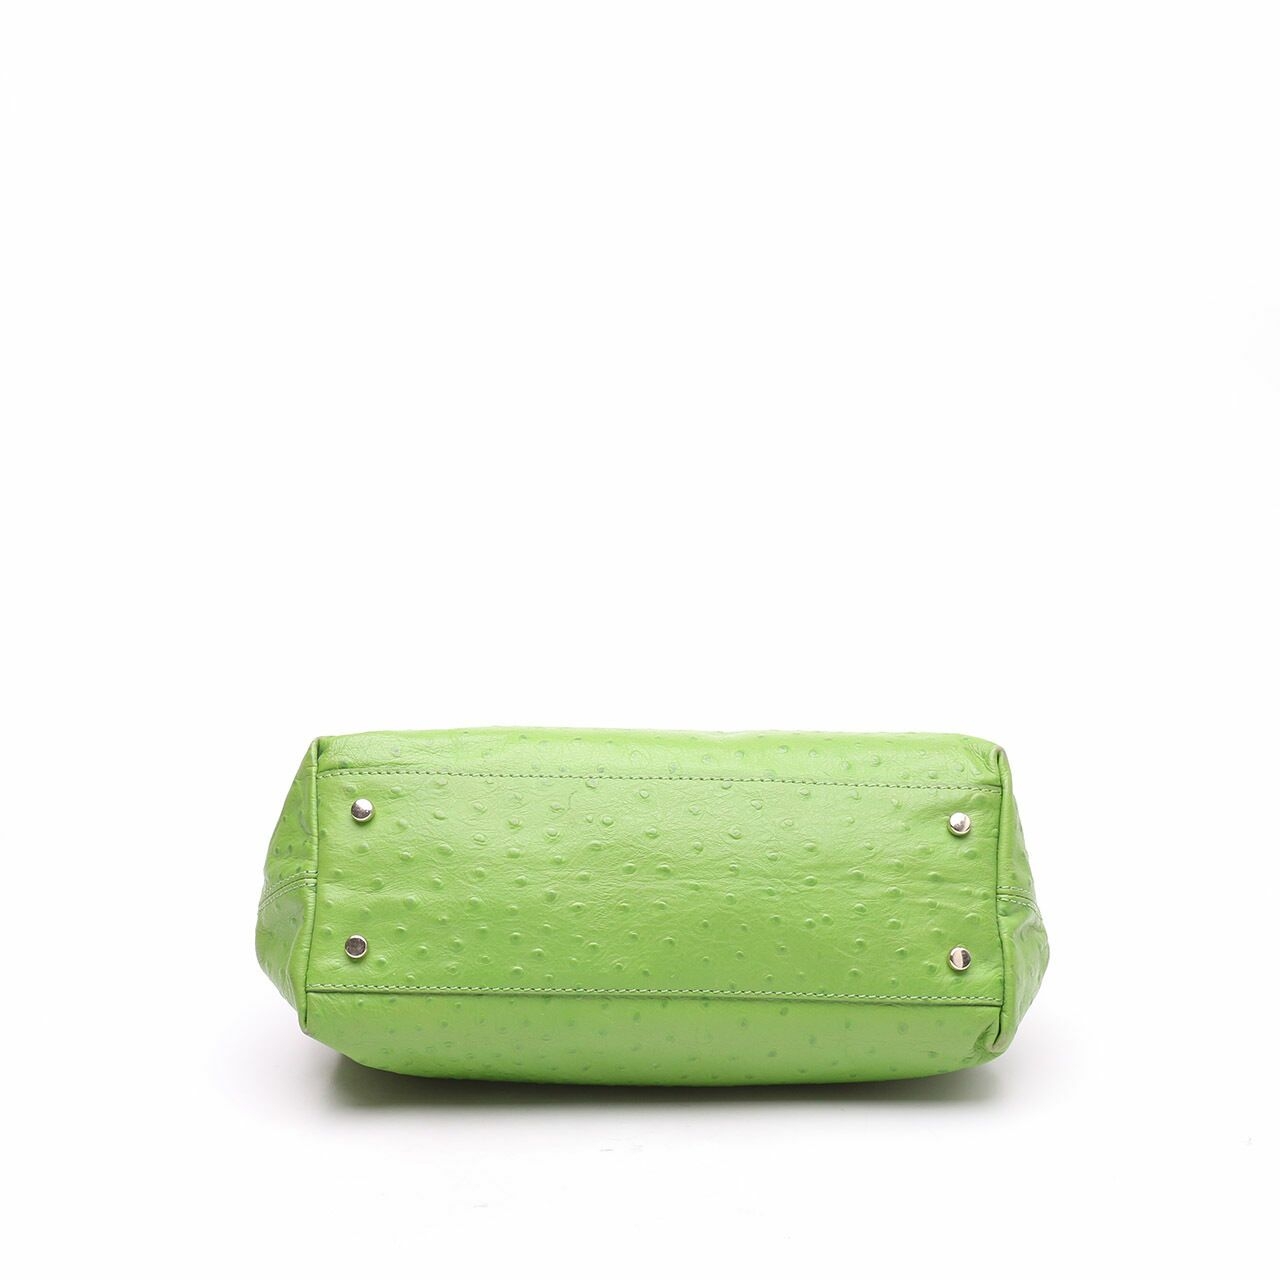 Kate Spade Green Ostrich Handbag